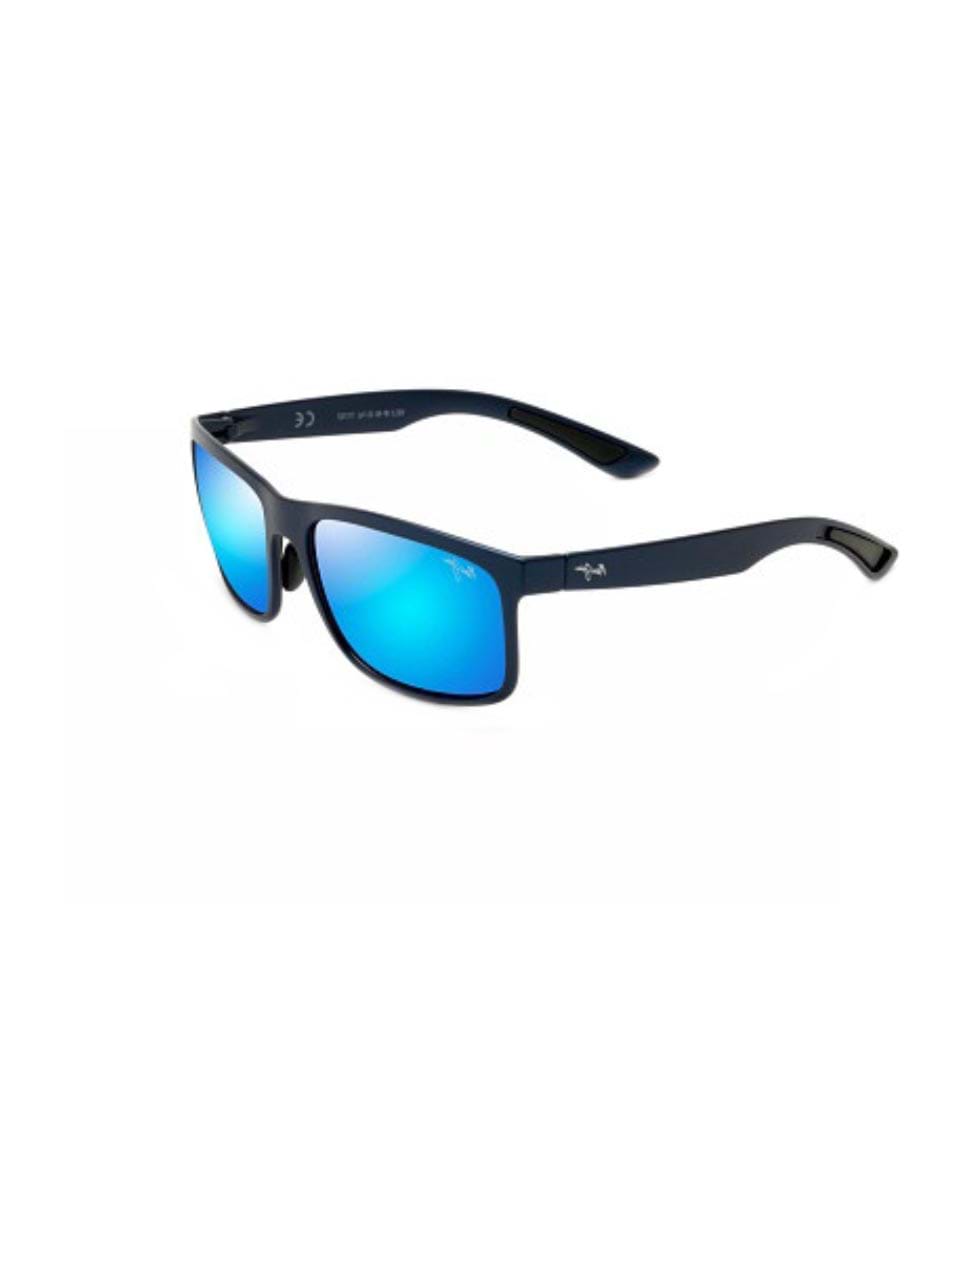 47010円 楽天 取寄 マウイ ジム アキ ポーラライズド サングラス Maui Jim Aki Polarized Sunglasses gunmetal blue hawaii